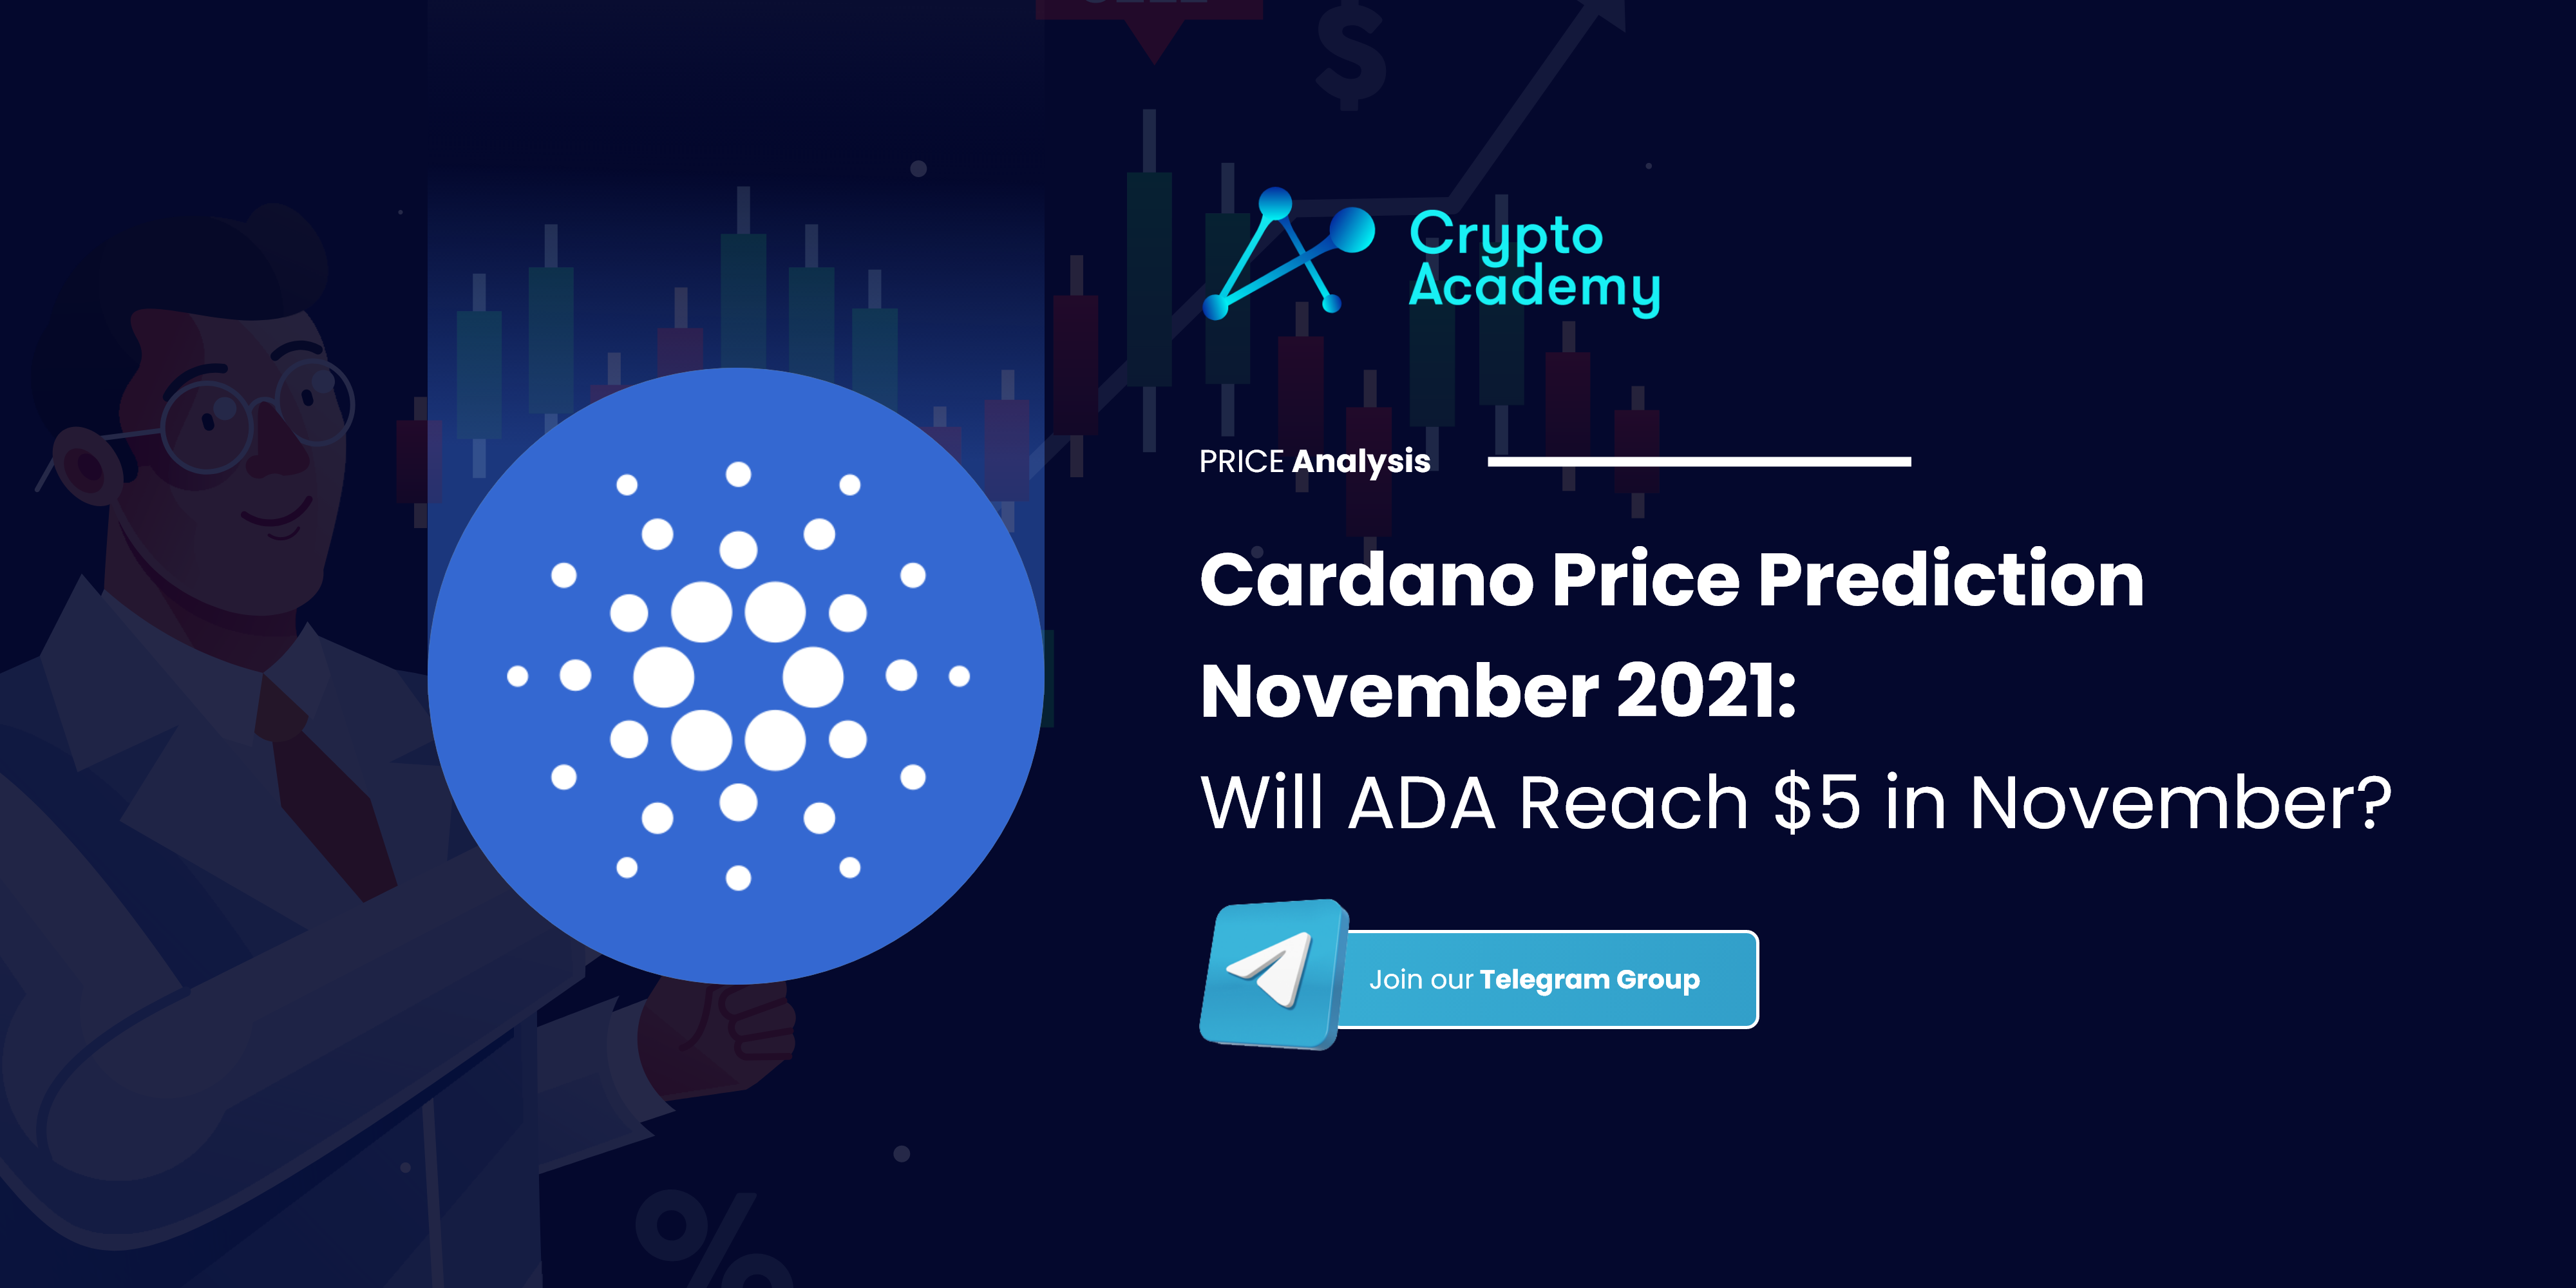 Cardano Price Prediction November 2021: Will ADA Reach $5 in November?